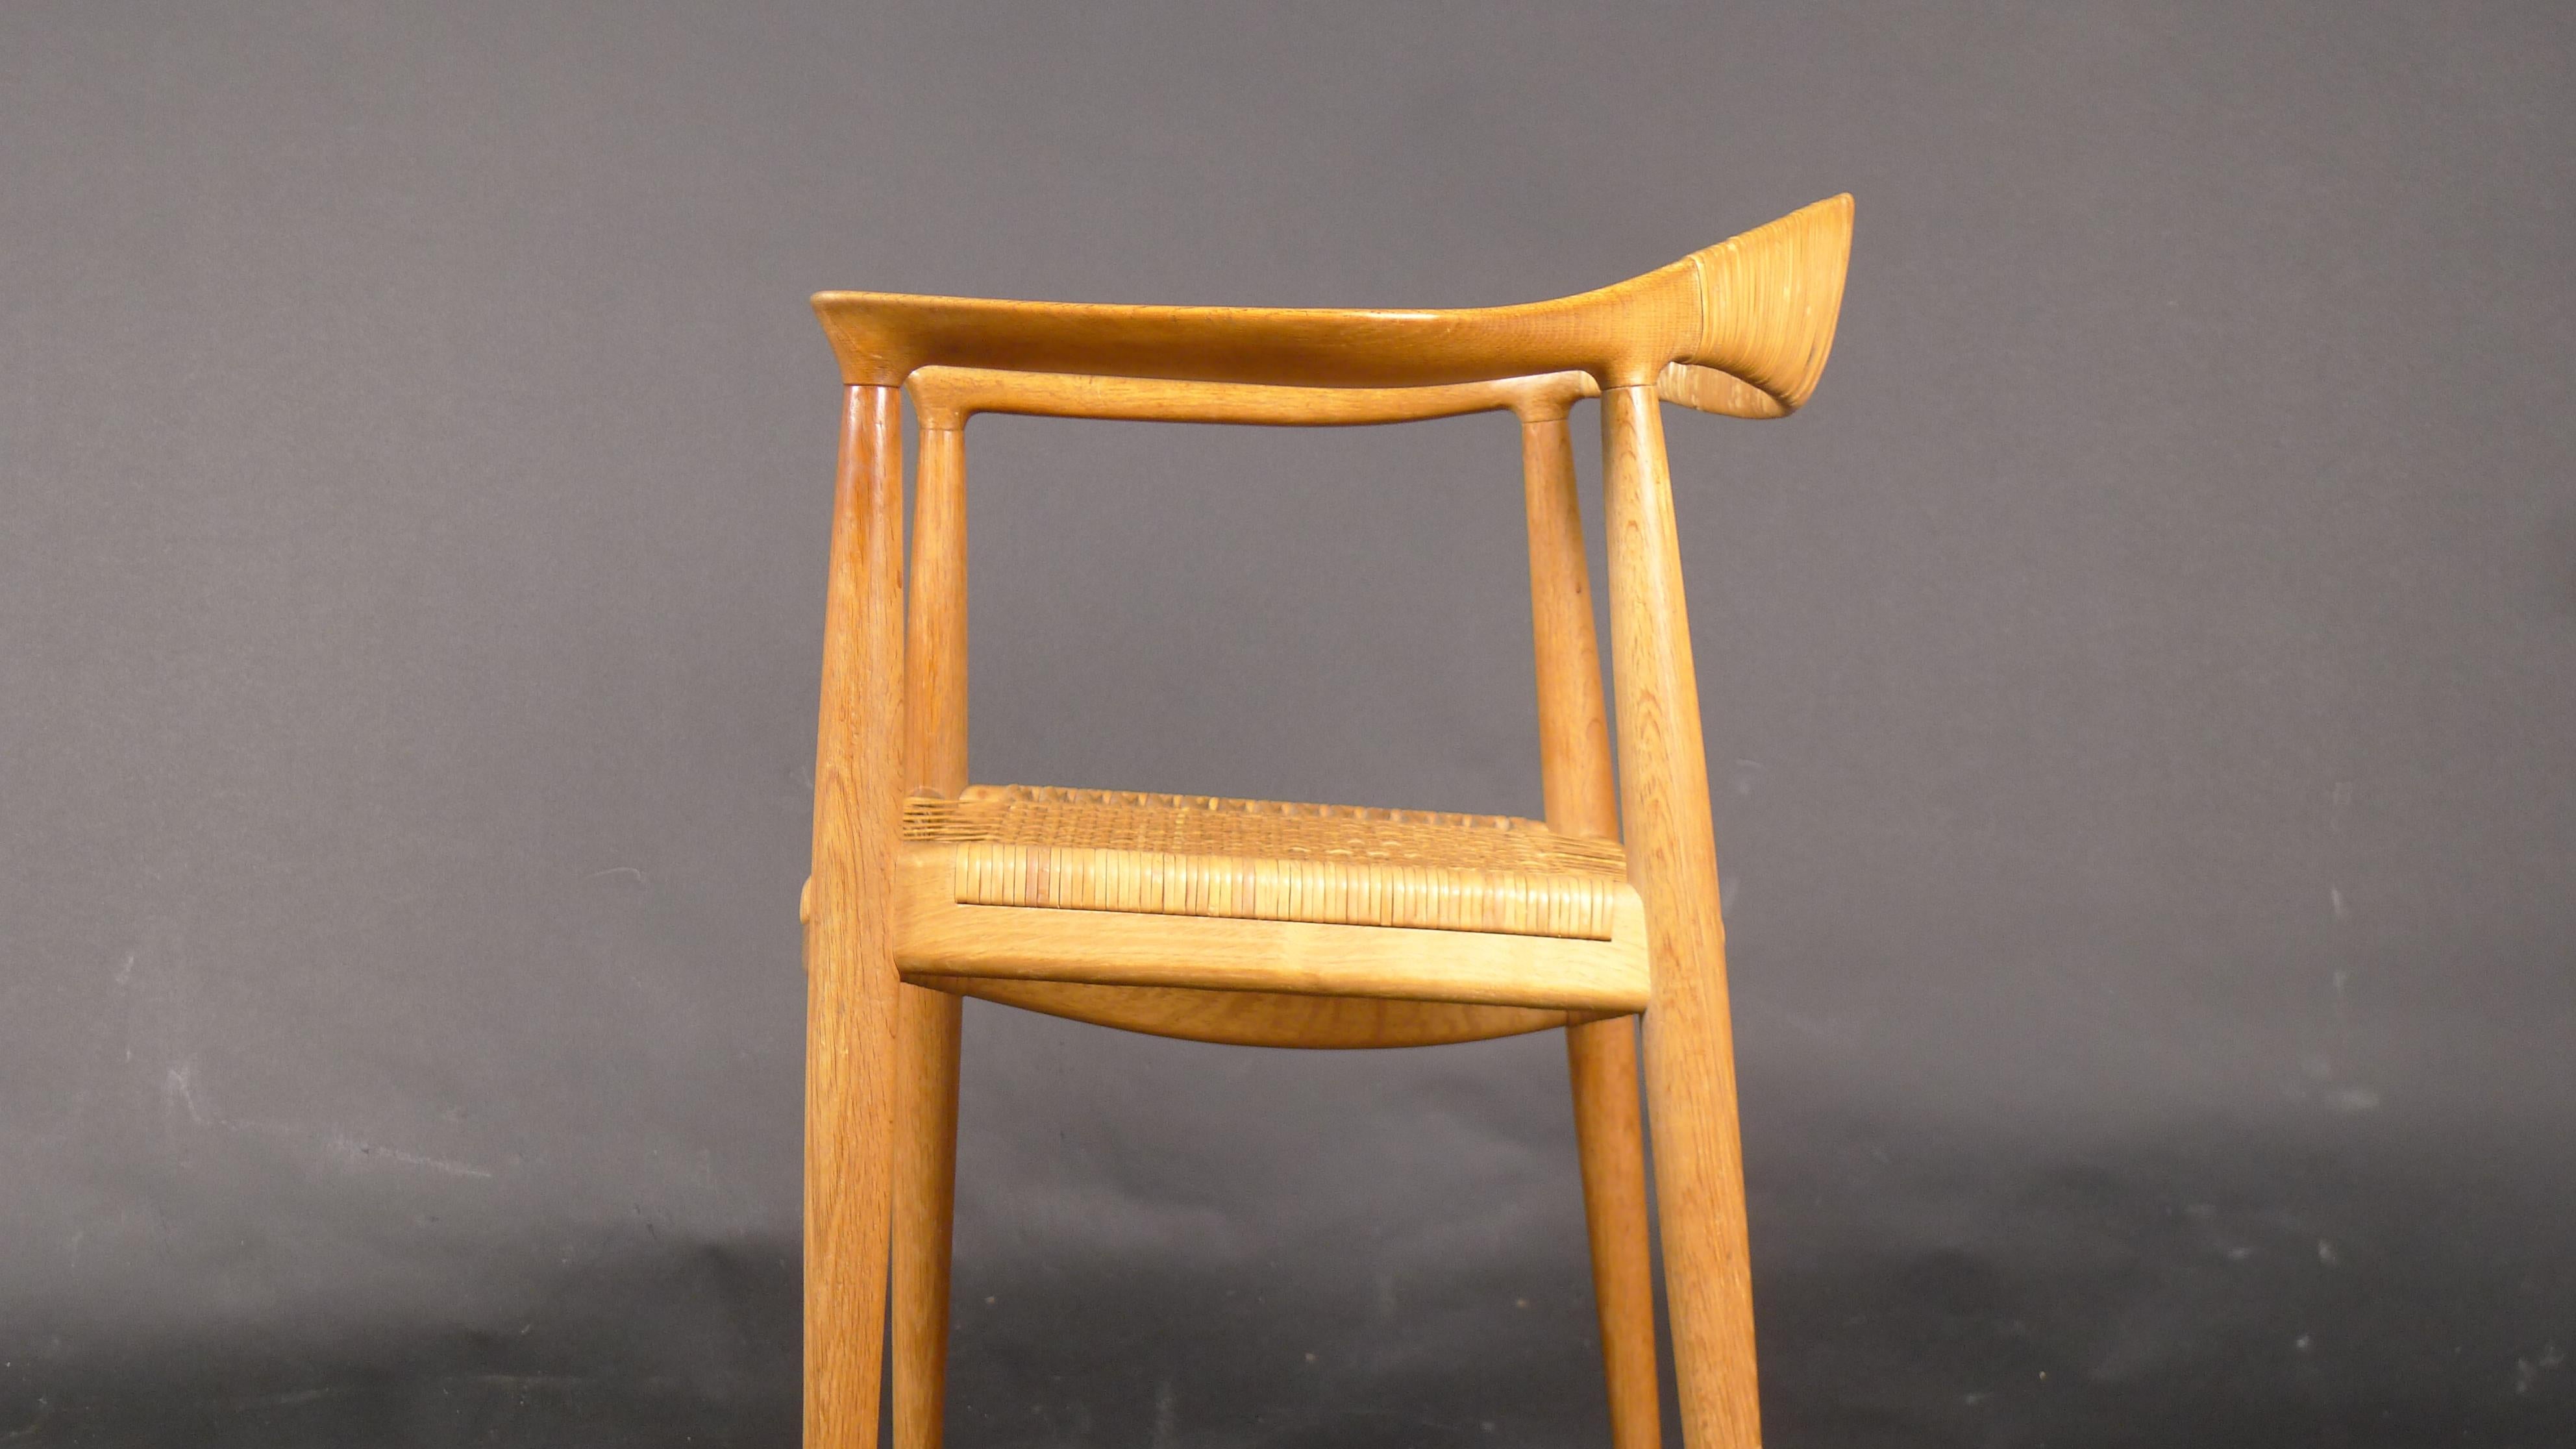 Milieu du XXe siècle Hans Wegner, Chaise ronde JH501, chêne et rotin, fabriqué par Johannes Hansen en vente